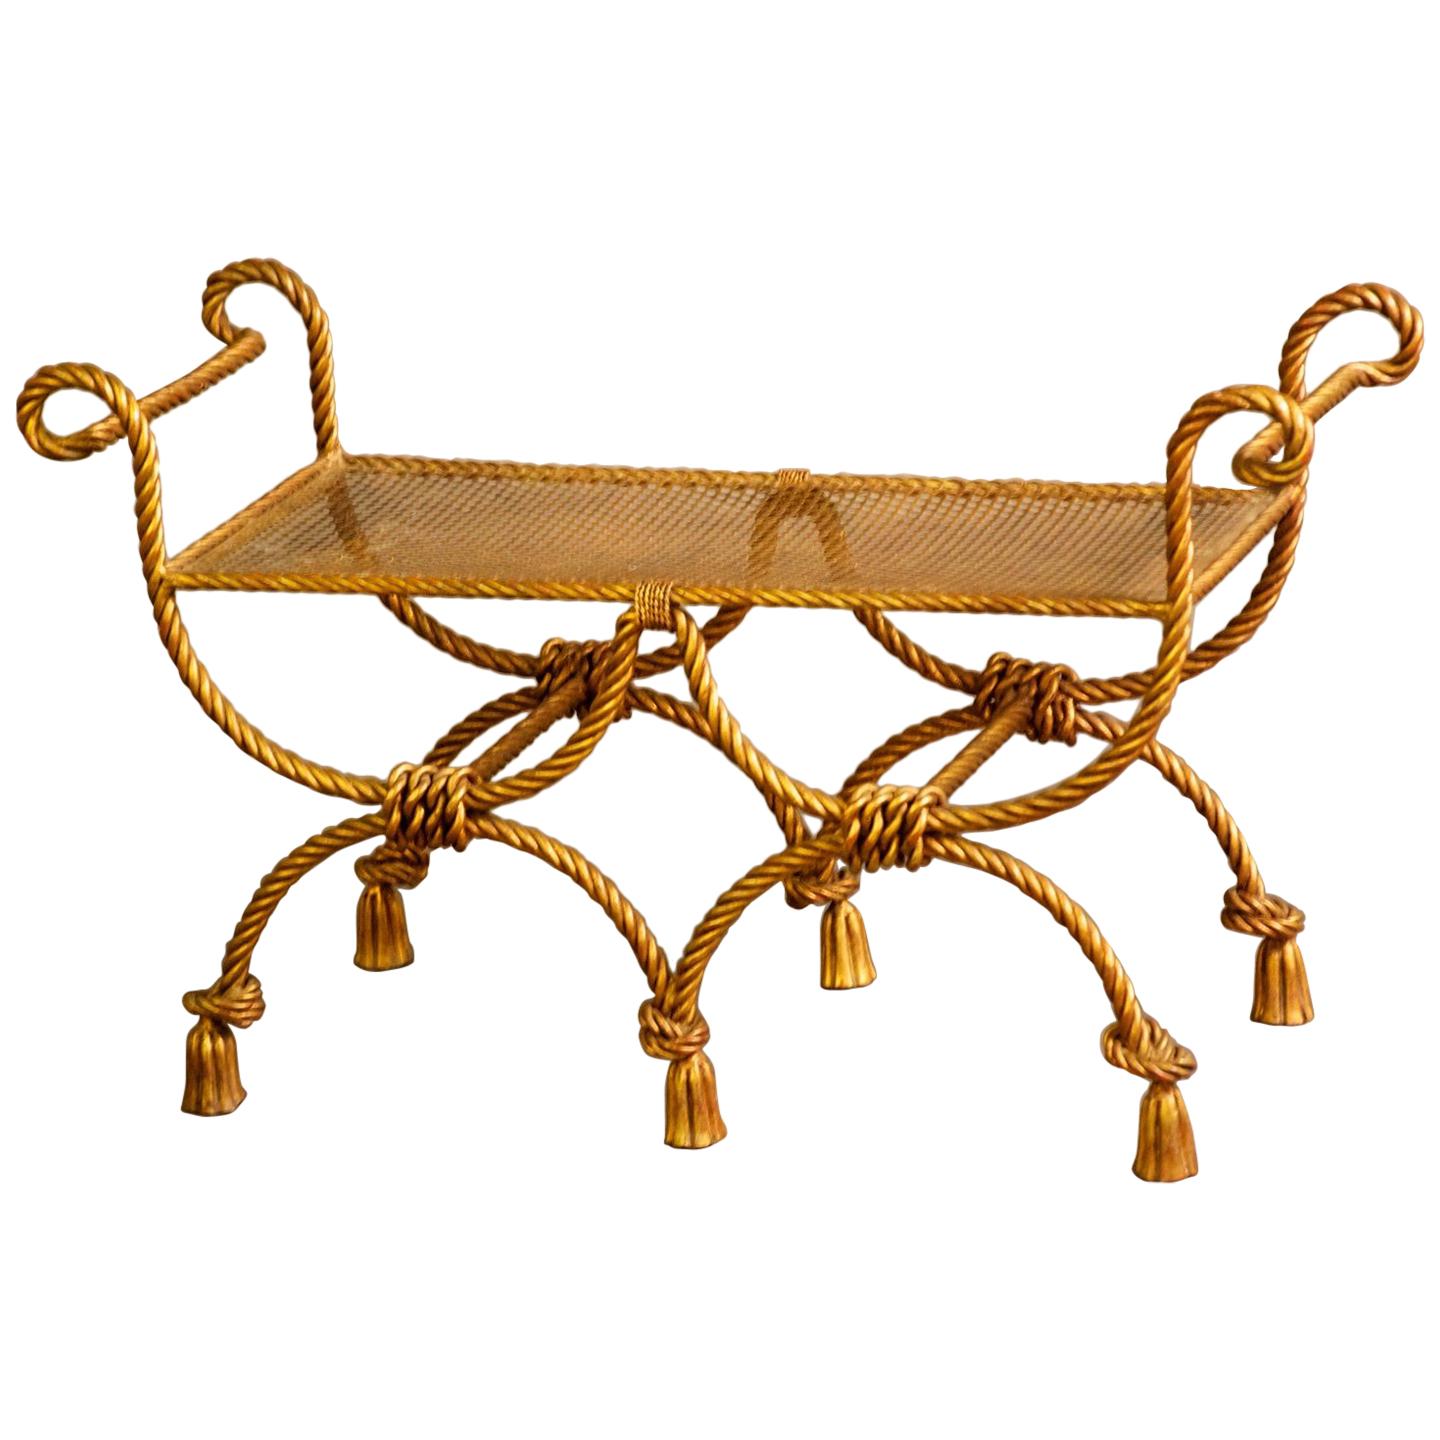 Niccolini Zweisitzige Bank aus vergoldetem Eisen